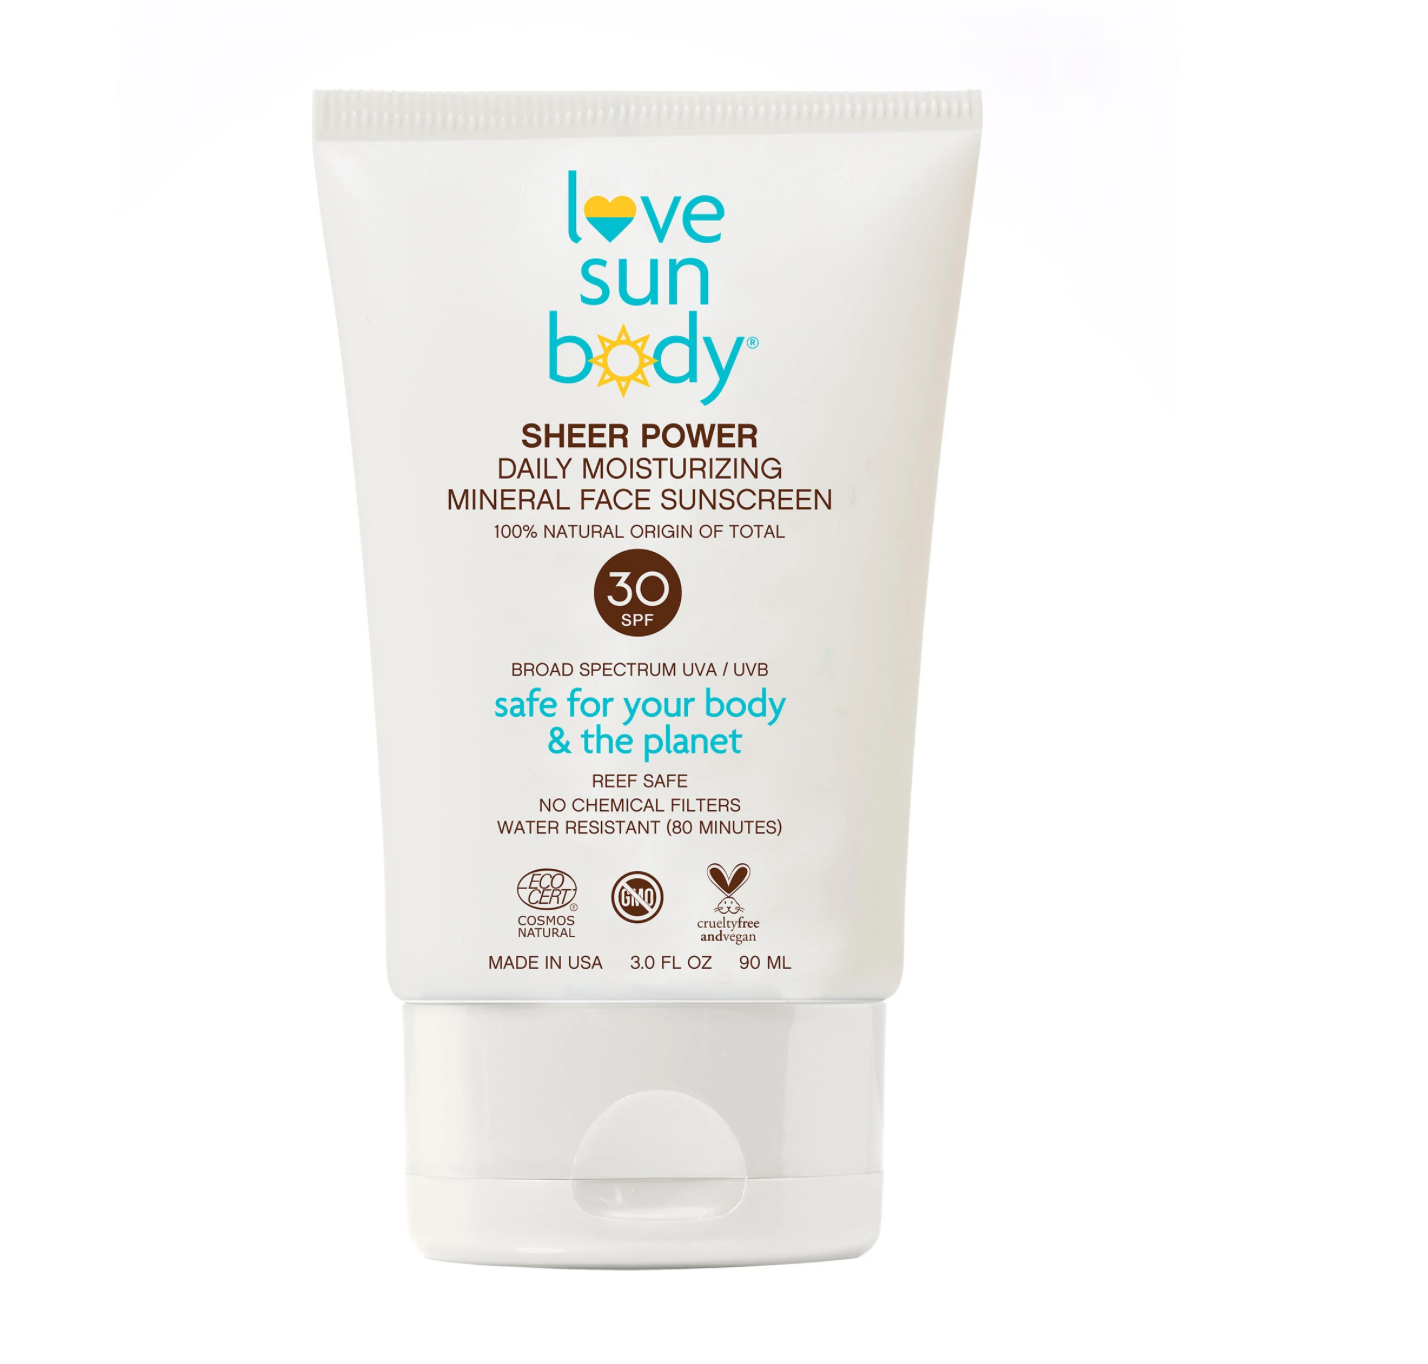 LOVE SUN BODY | Sheer Power Daily Moisturizing Mineral Face Sunscreen SPF 30